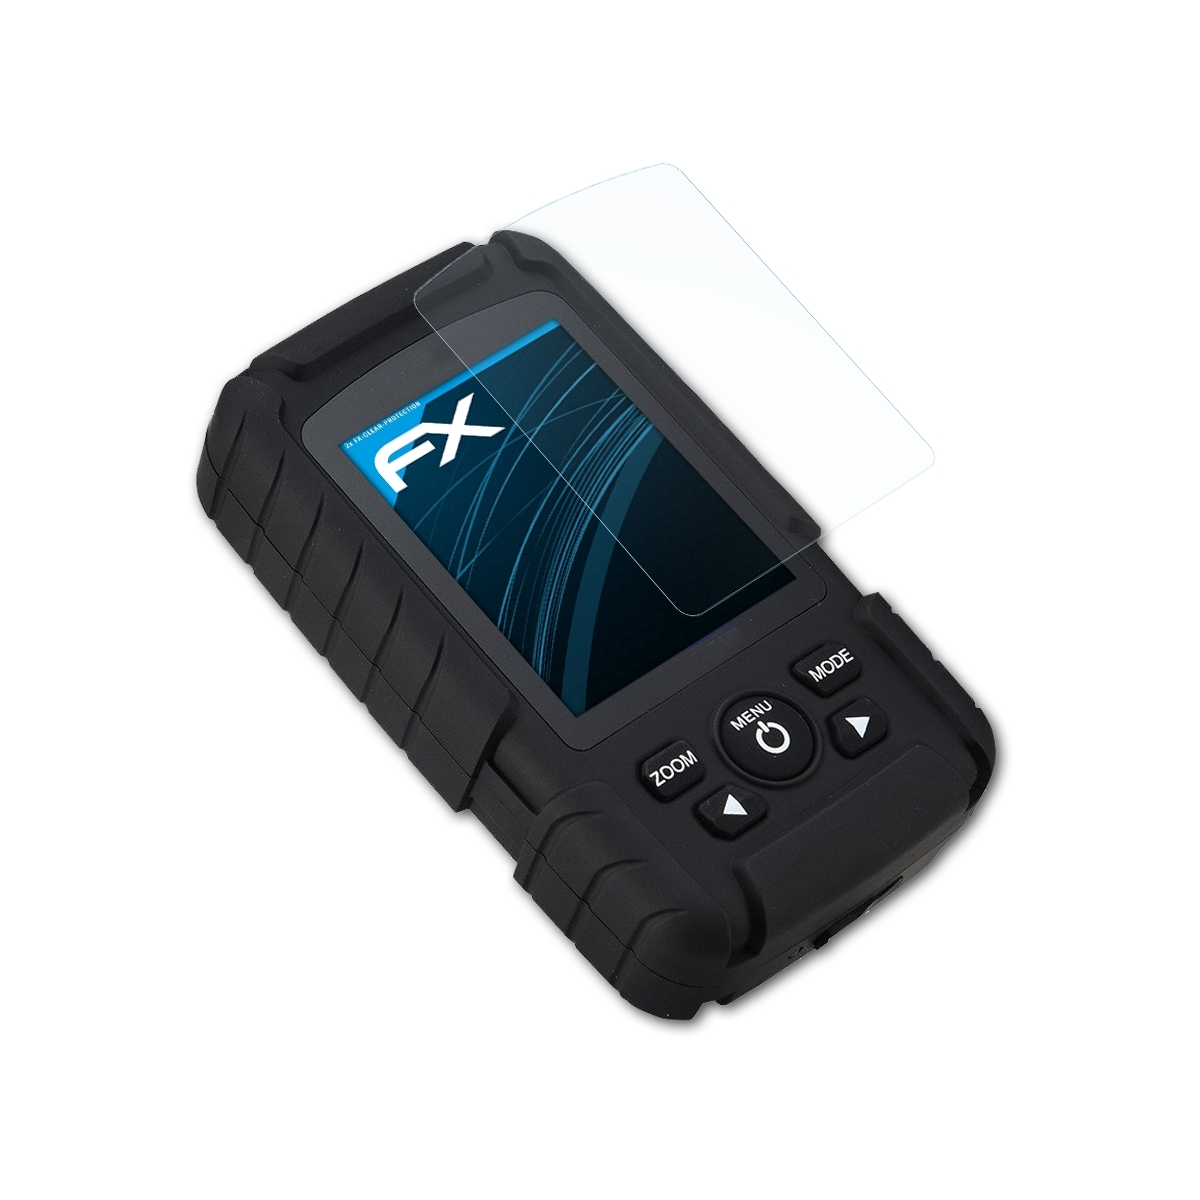 ATFOLIX 2x FX-Clear Displayschutz(für Lucky (FF718LiC)) Fishfinder